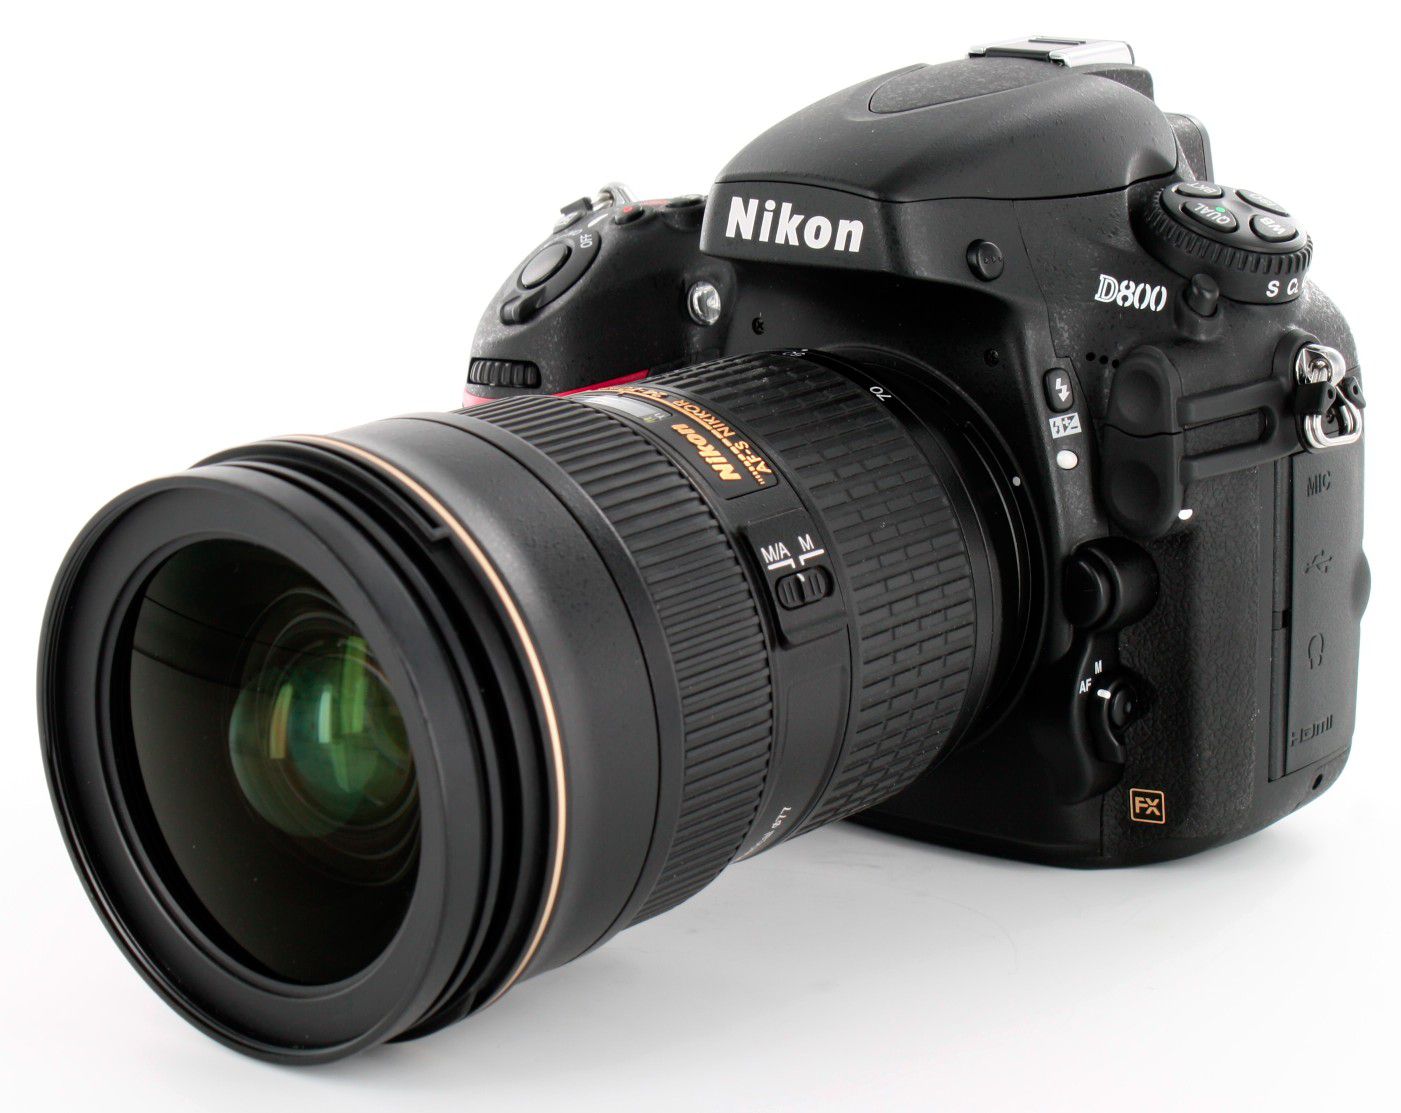 Nikon D800 Full Frame Digital SLR Camera (Body Only)